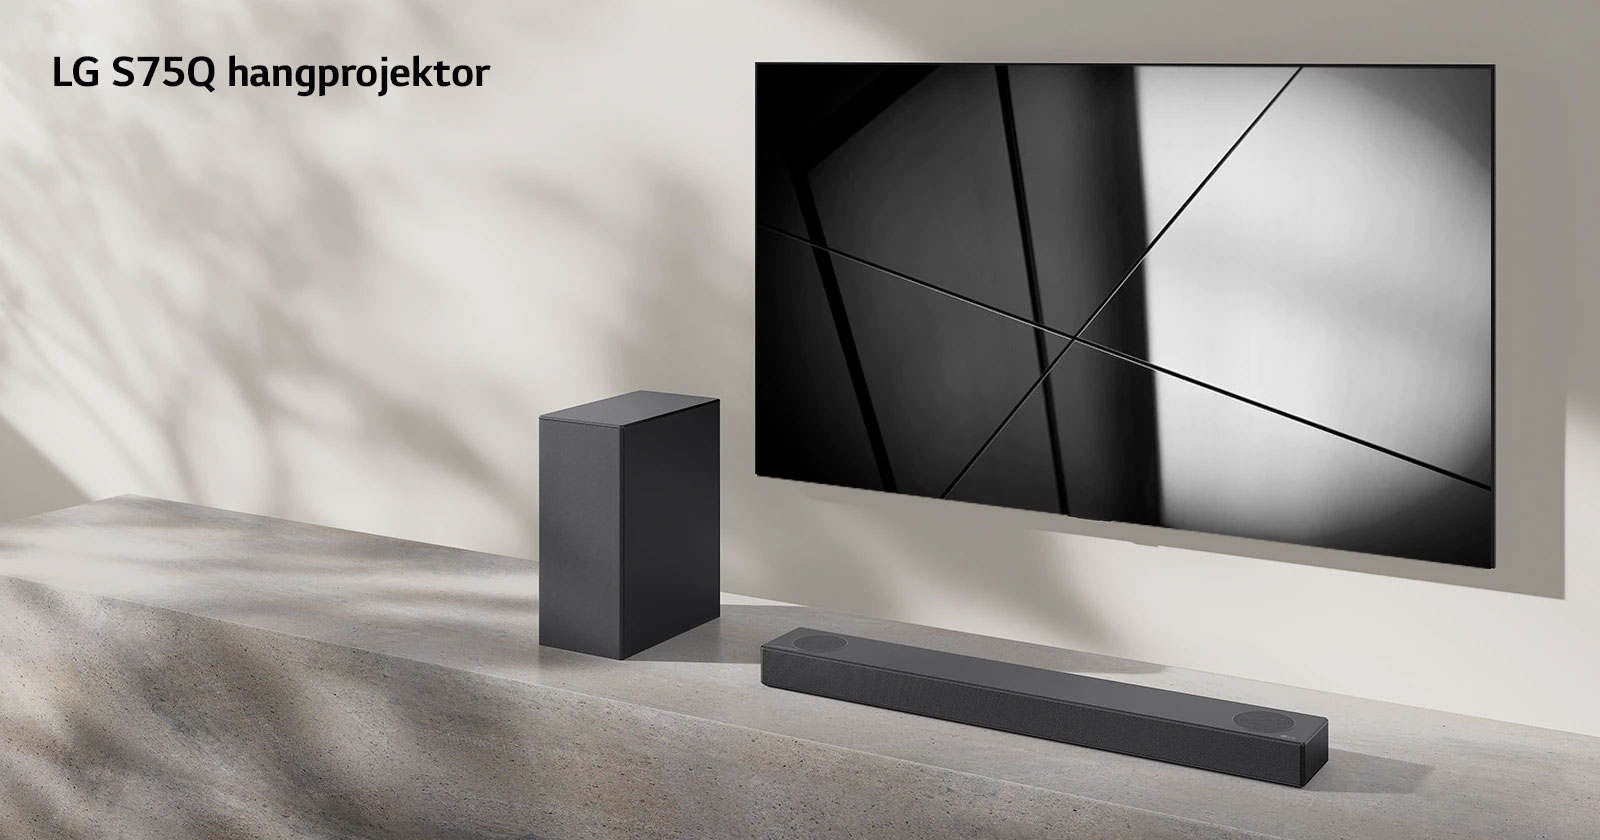 LG S75Q hangprojektor és LG TV együtt elhelyezve egy nappaliban. A TV be van kapcsolva, és egy fekete-fehér kép látható rajta.